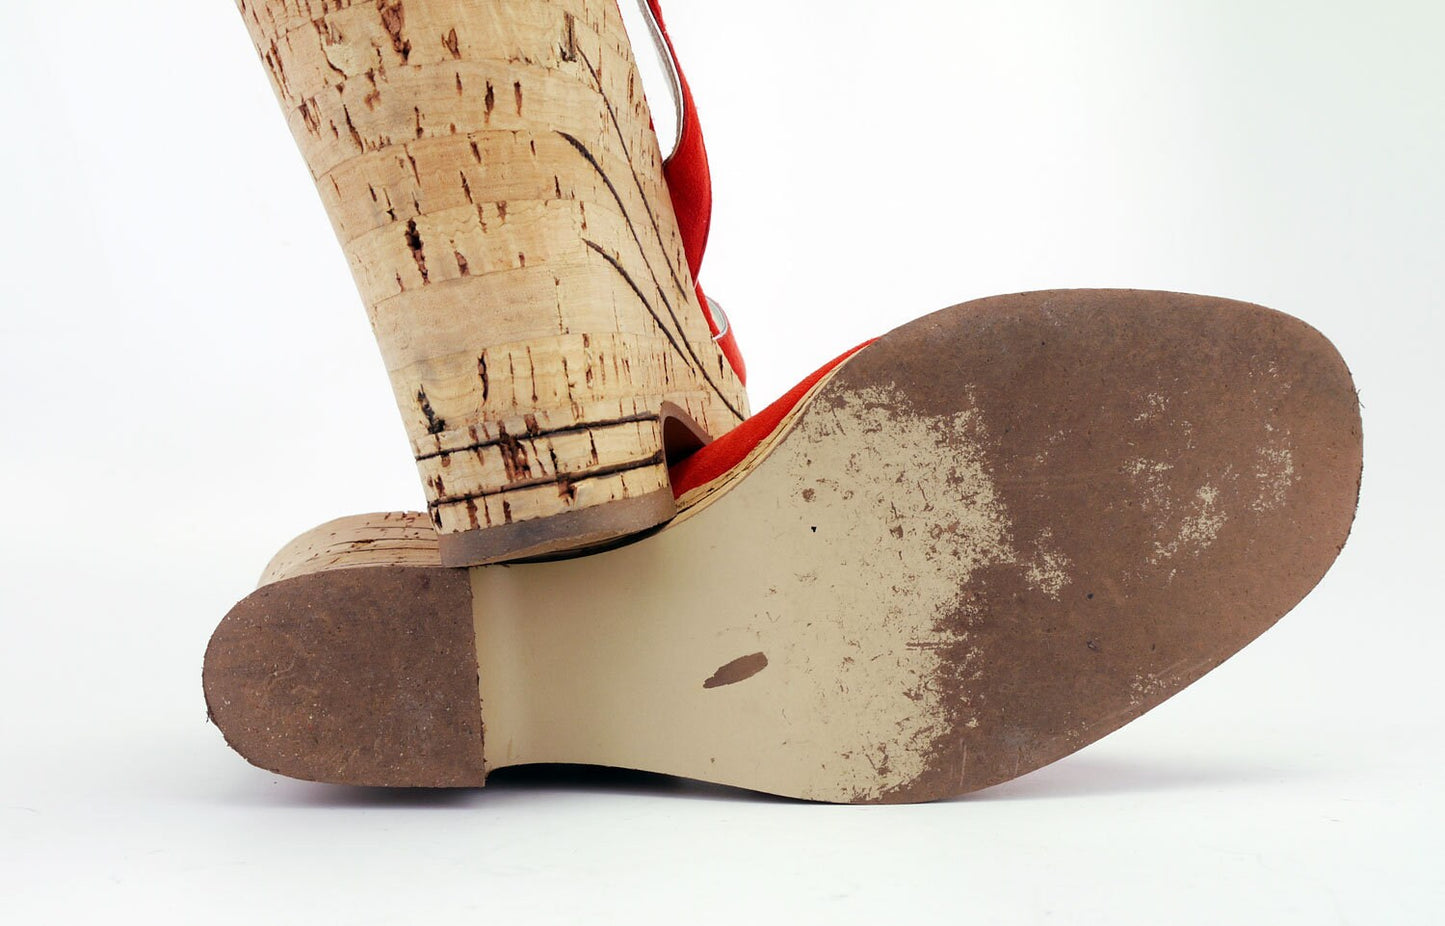 90s Does 70s Cork Platform Sandals by Elegance UK 7